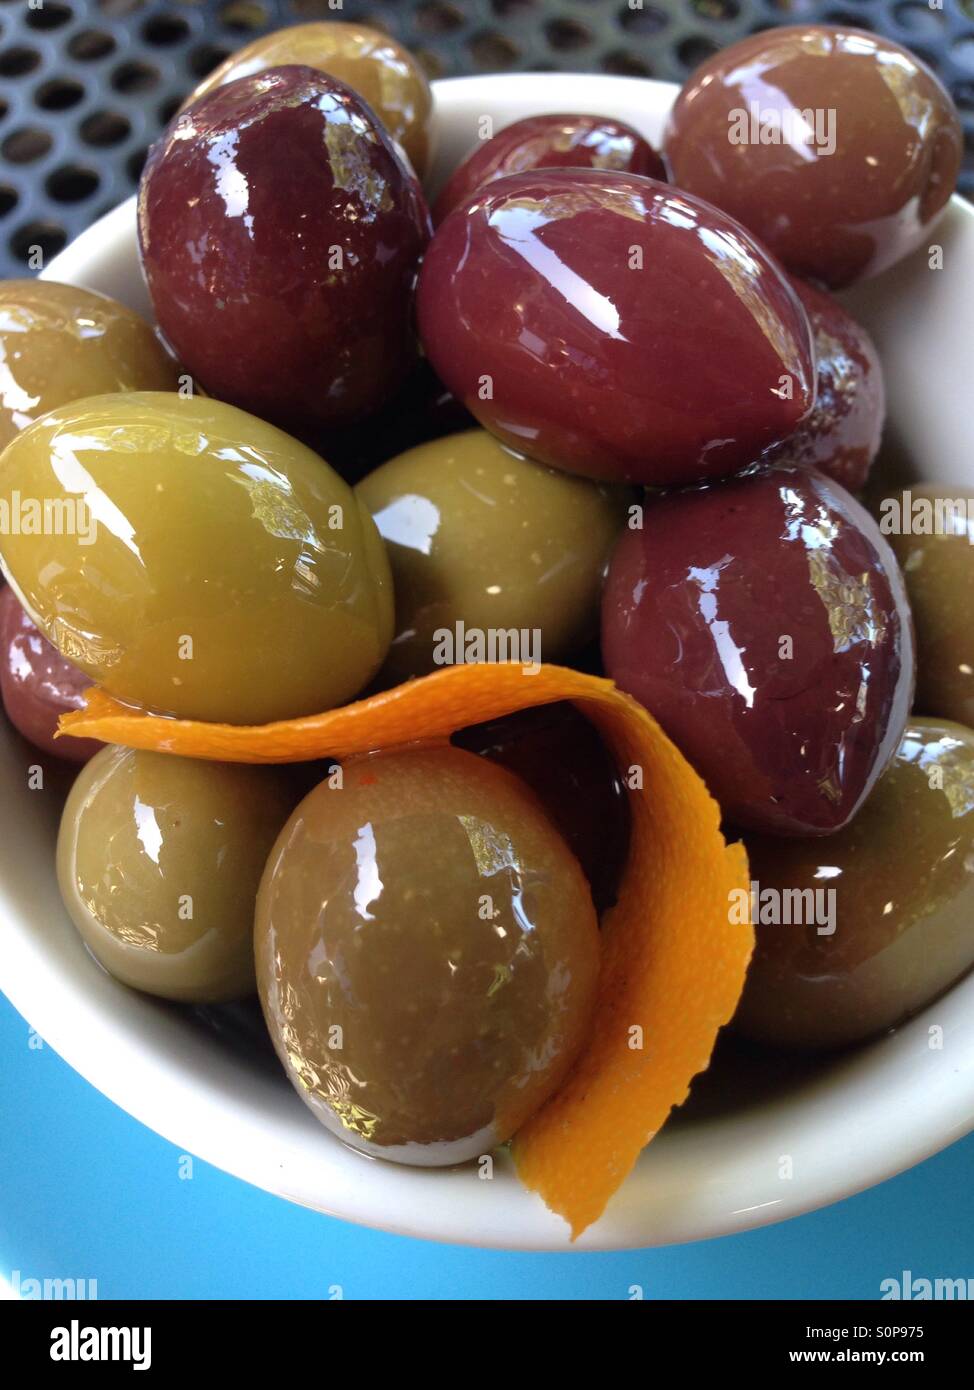 Les olives dans un bol avec le zeste d'orange Banque D'Images